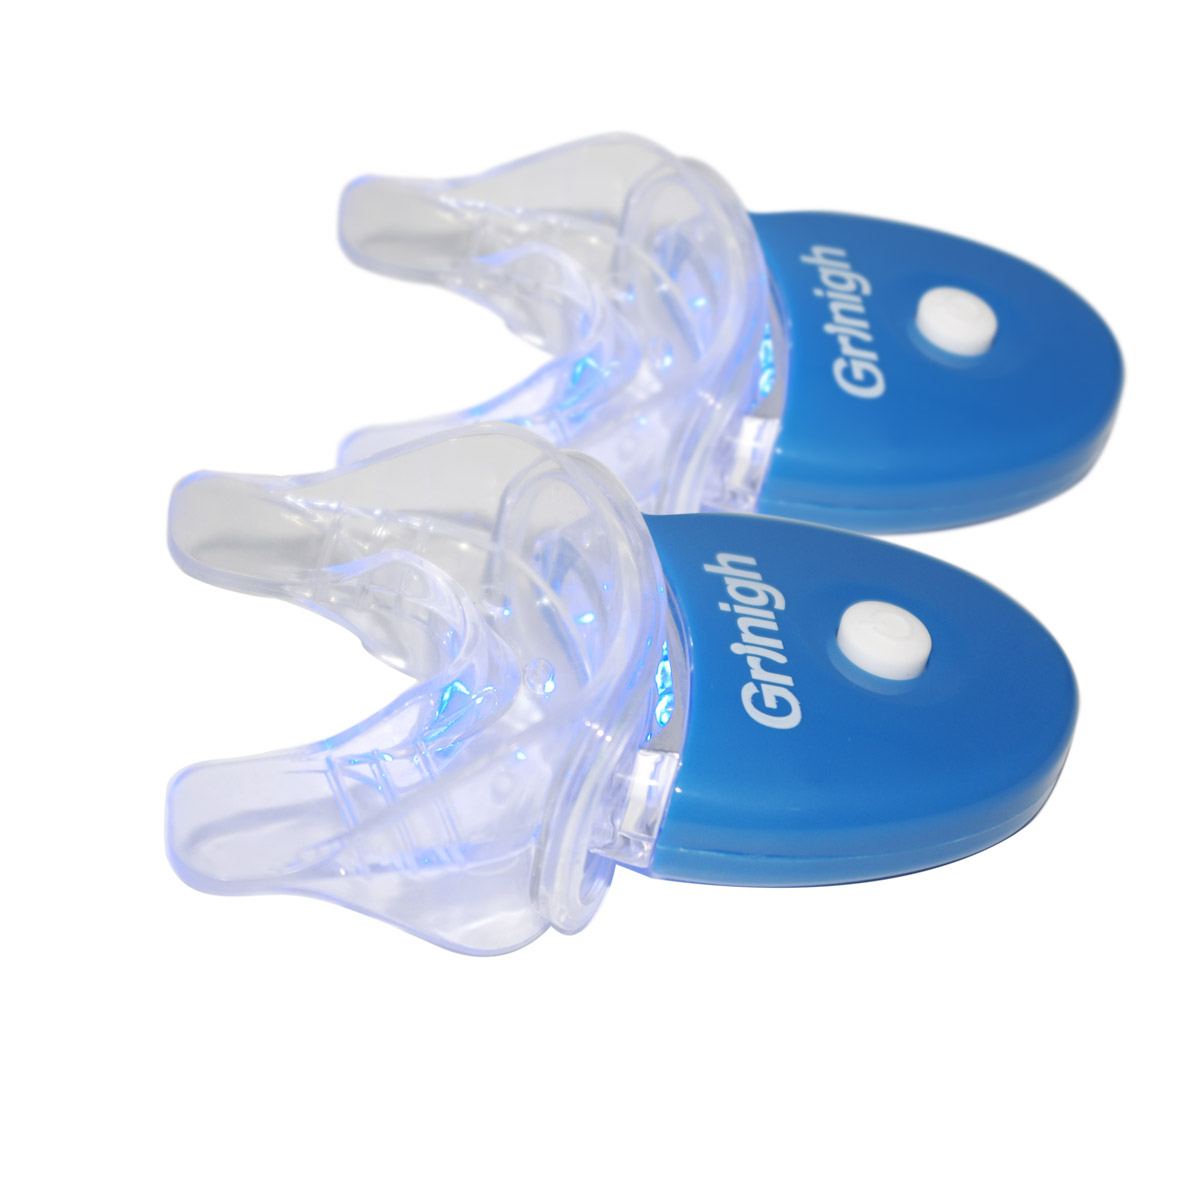 Grin365 2 Imposta Mini Dental luce bianca a LED e vassoio di bocca abbinato per la casa Teeth Whitening sistema CE approvato